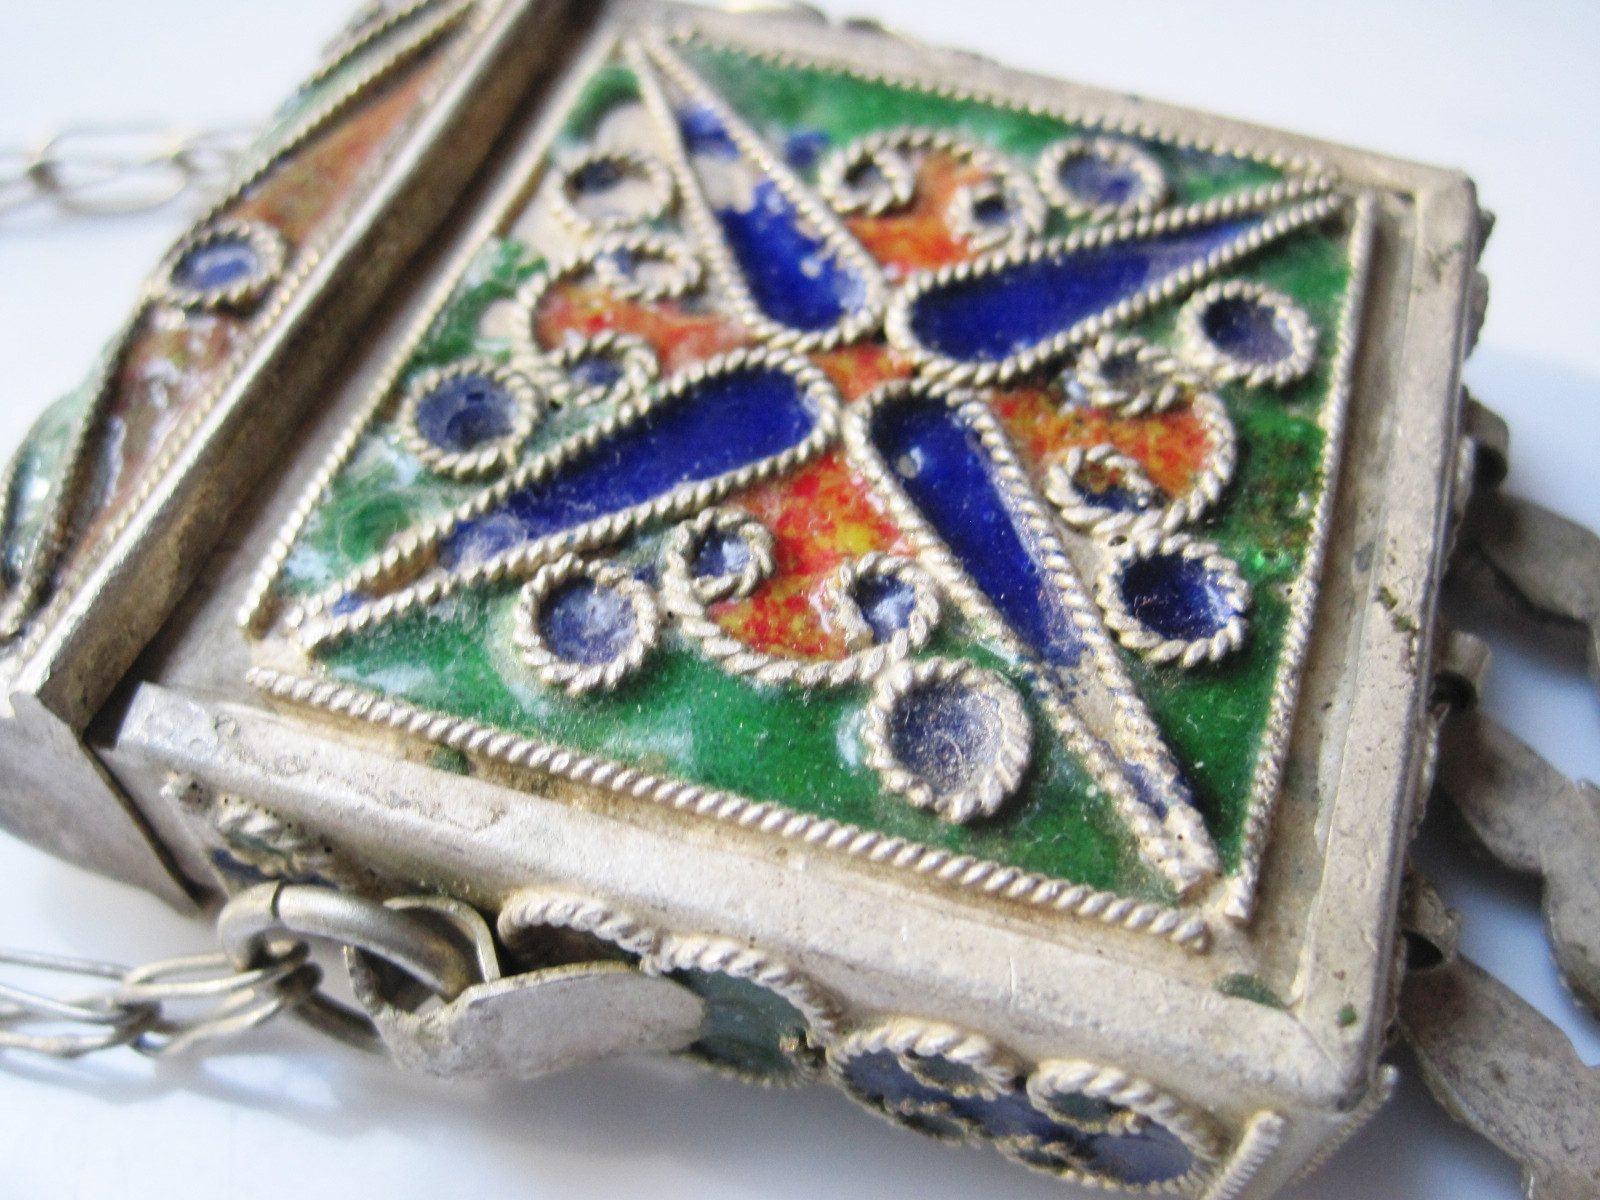 Enamel and Metal Koran Amulet Case Box - Anteeka